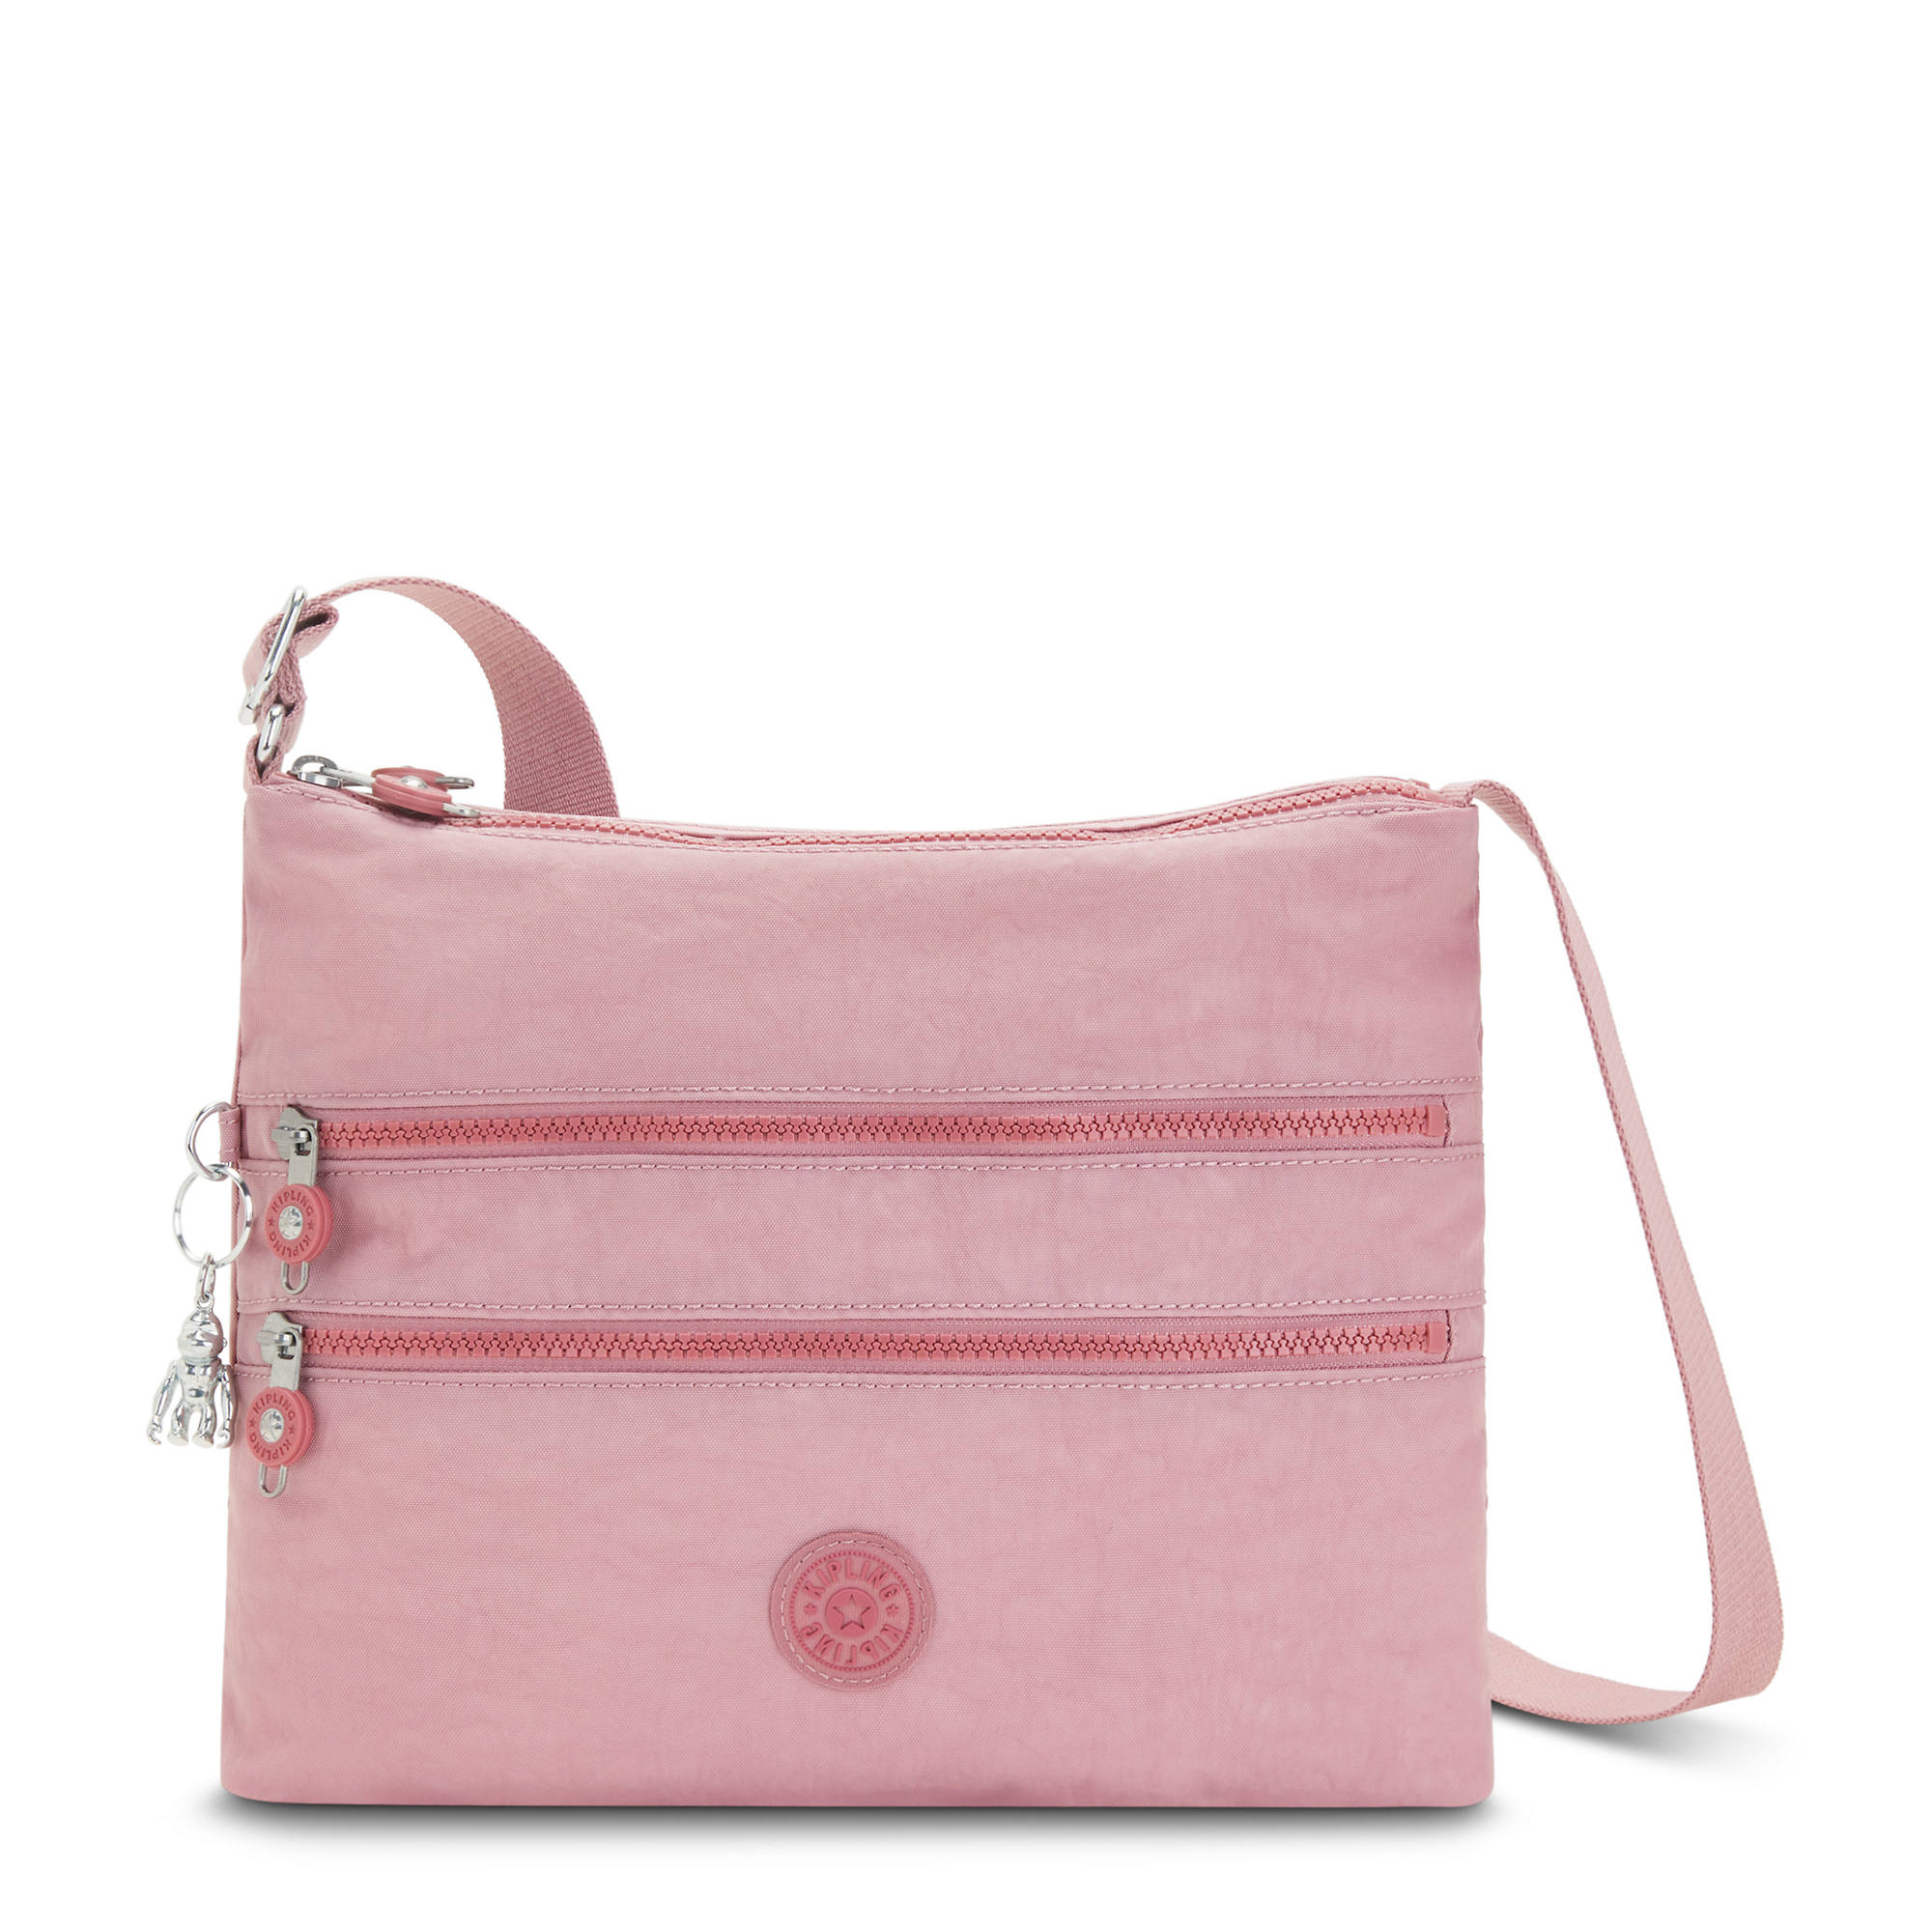 Kipling Women's Alvar Crossbody Handbag with Adjustable Strap | eBay